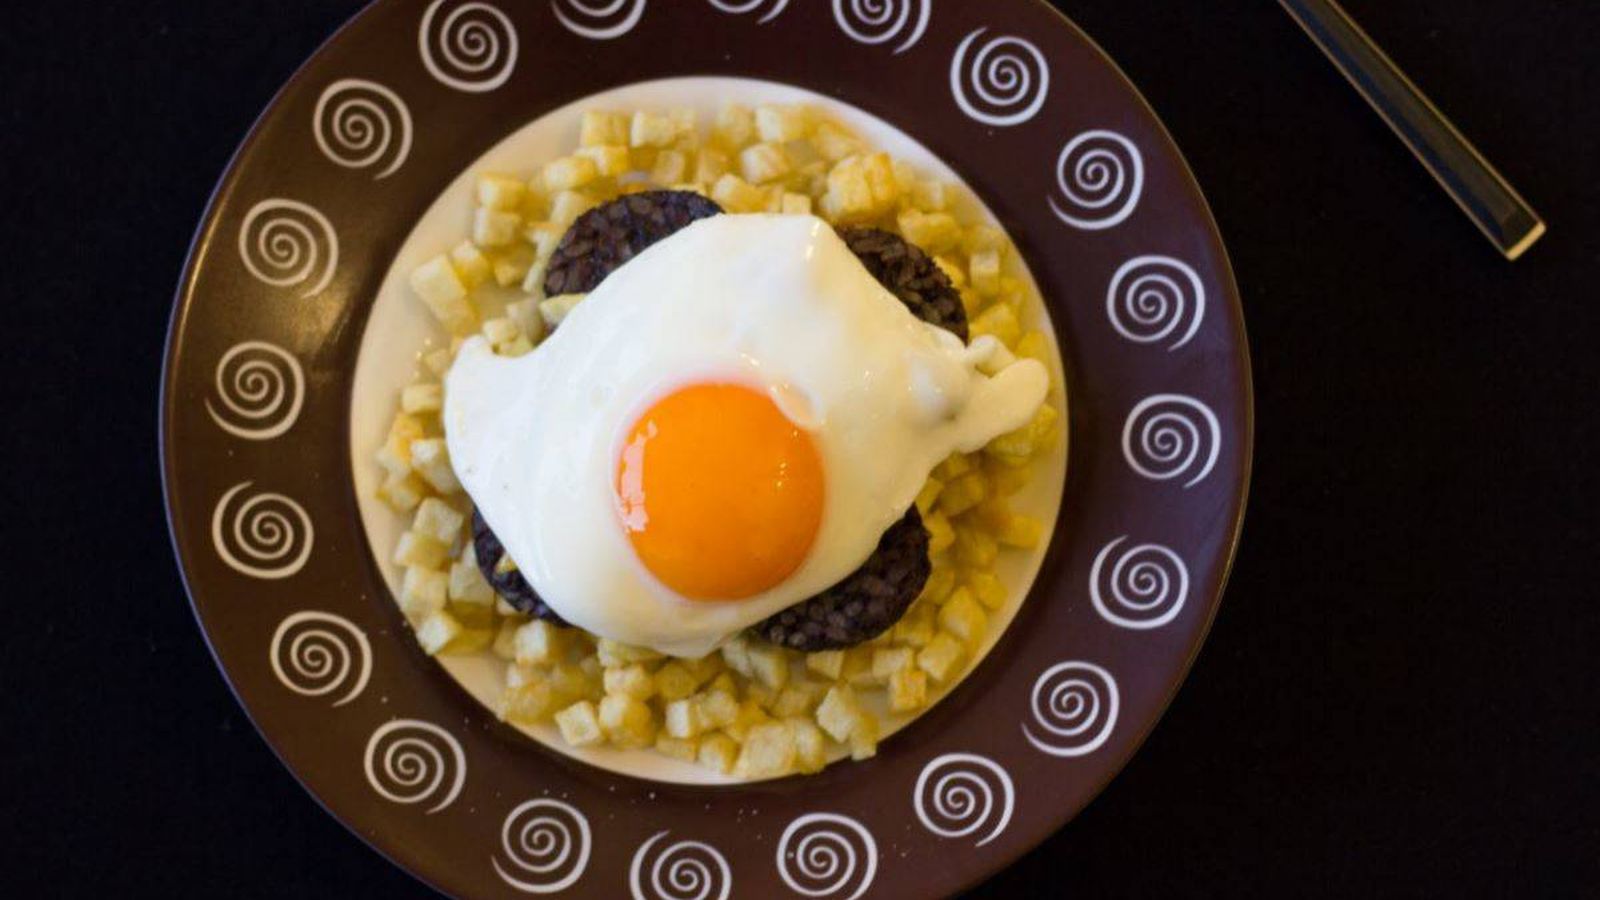 Huevos fritos, escalfados y a baja temperatura ya pueden servirse en bares  y restaurantes - Mercat Carni Barcelona